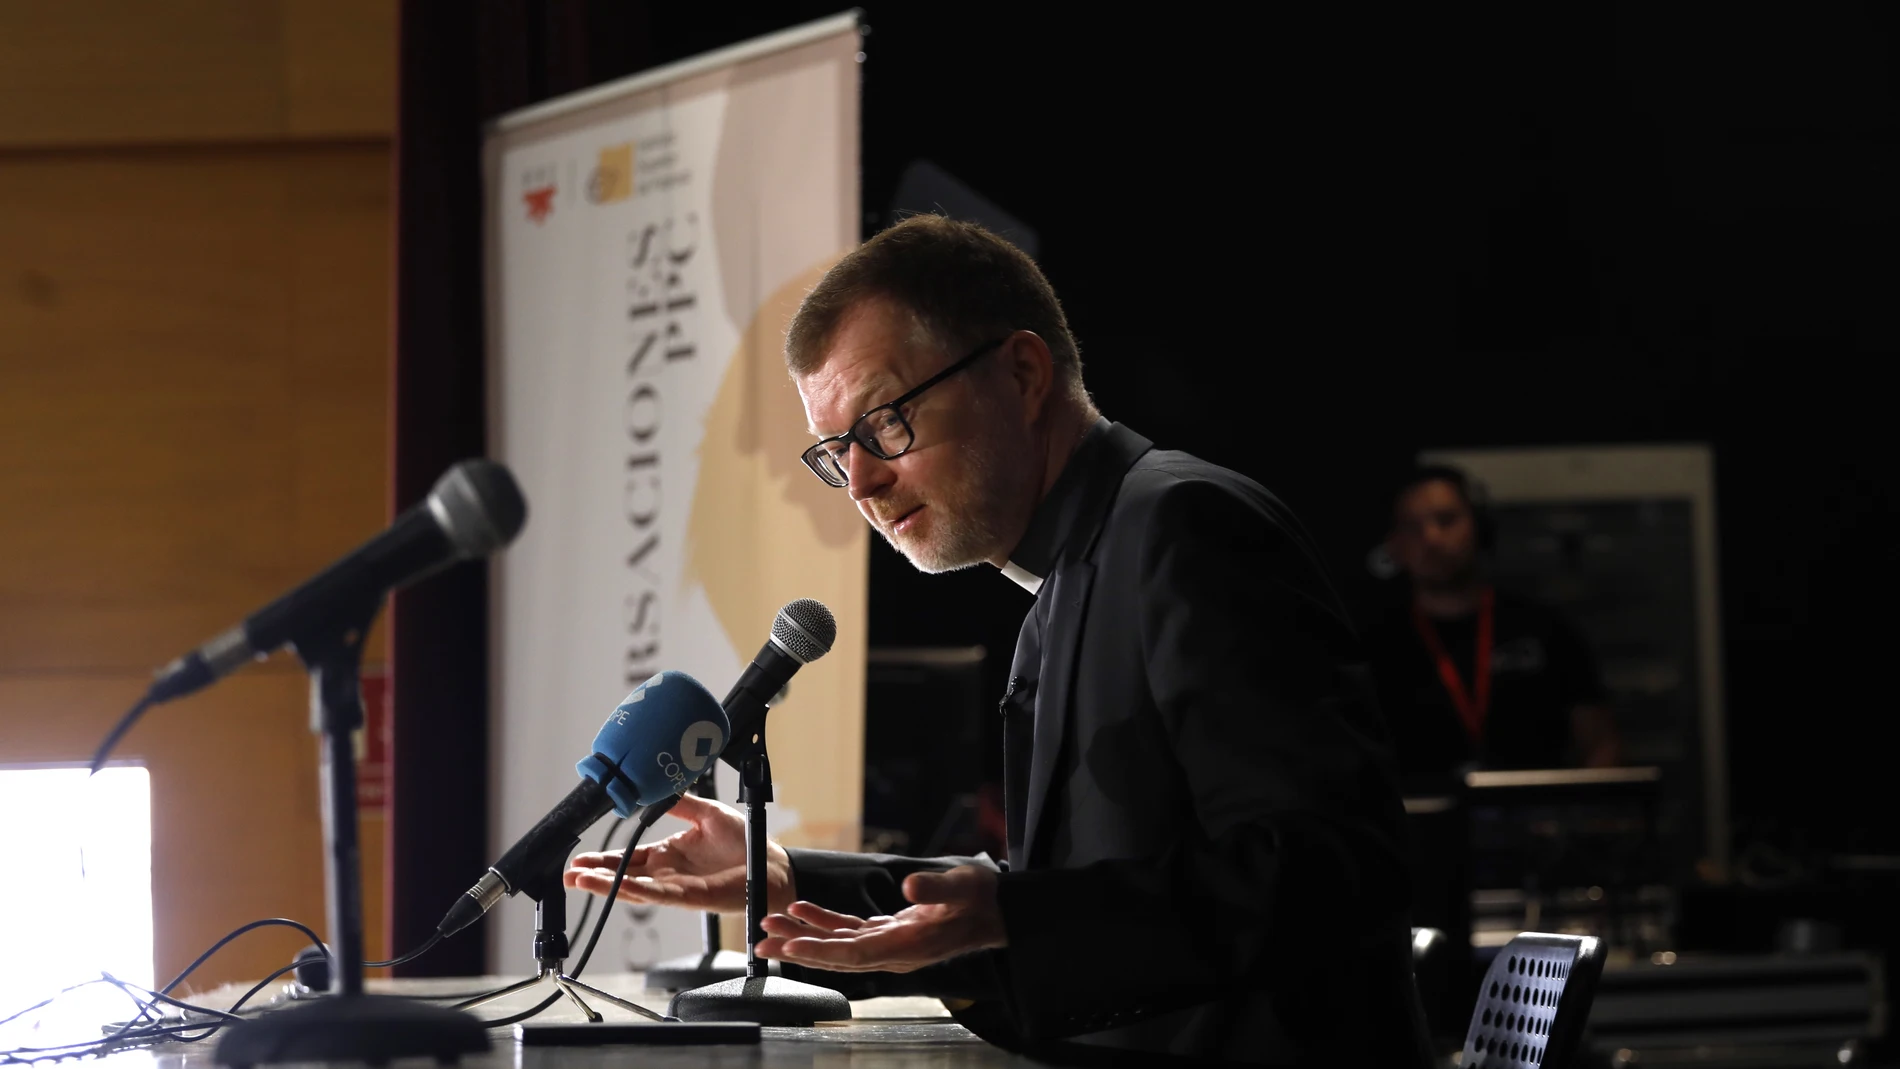 Hans Zollner, ayer, durante su ponencia en Conversaciones PPC